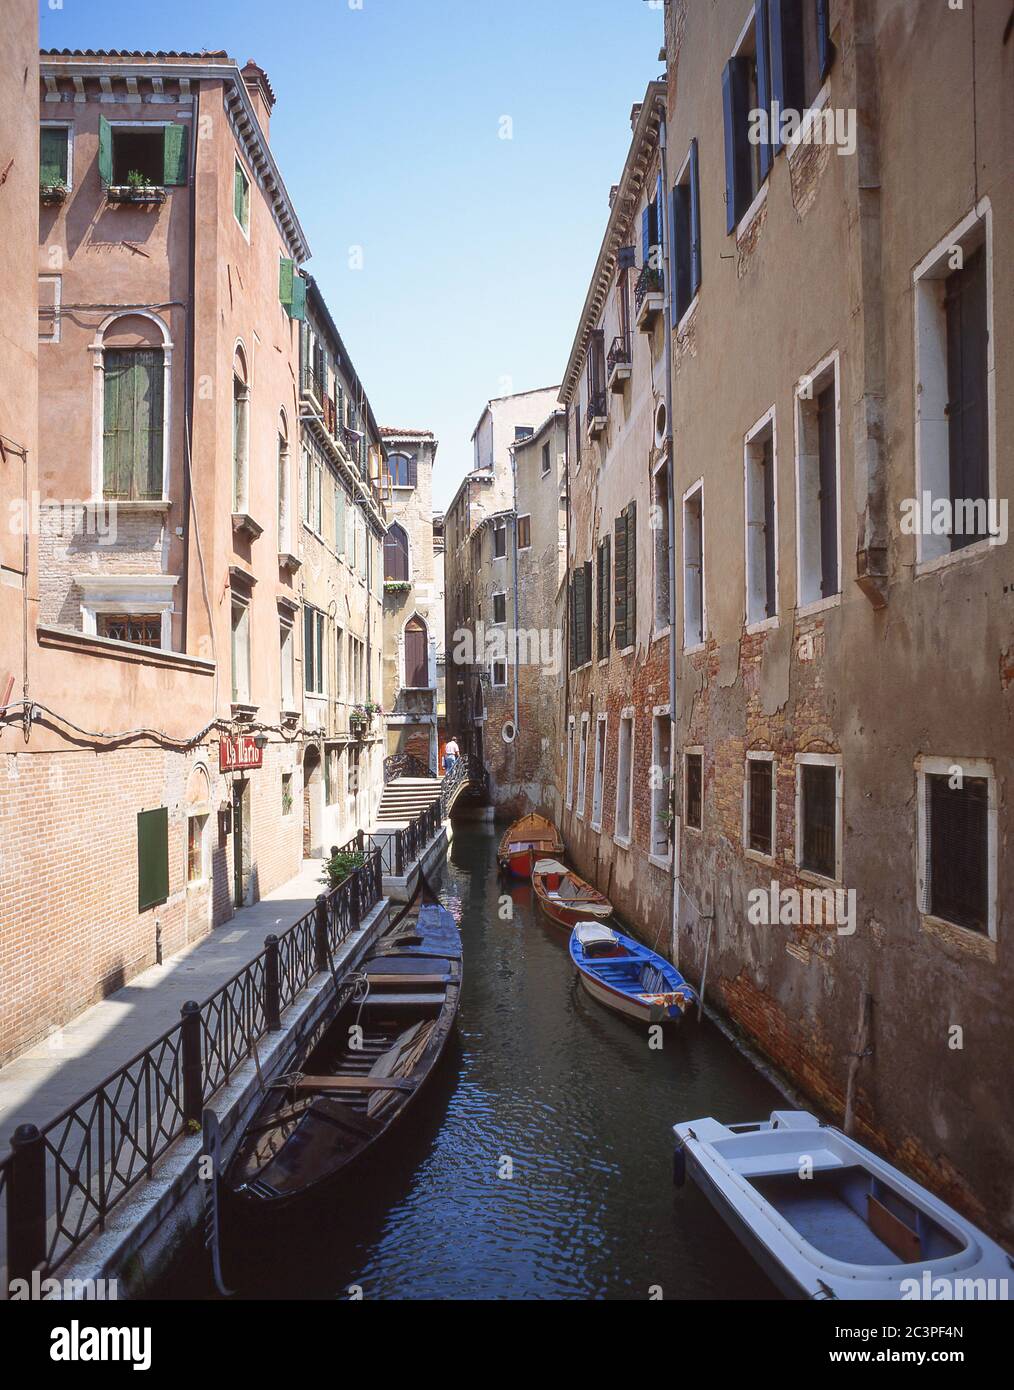 Narrow backstreet canal, Venice (Venezia), Veneto Region, Italy Stock Photo